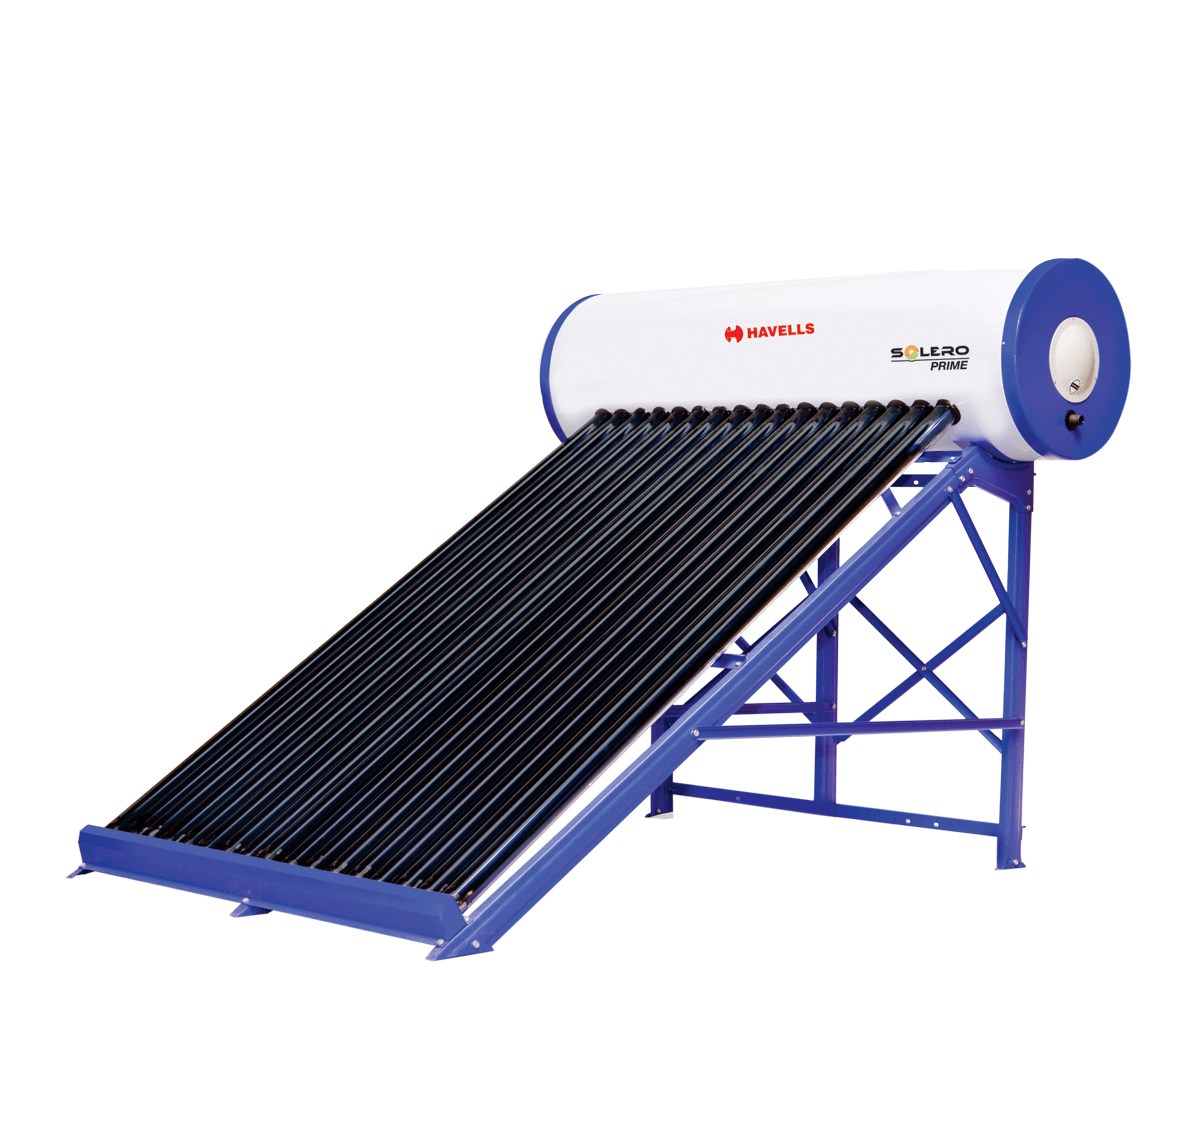  Havells Solero Prime Water Heater एक सोलर हीटर को बॉथरूम और किचन दोनों के लिए किया जा सकता है. इंस्टॉलेशन के दौरान इसकी एक यूनिट को छत पर रखना होता है. जबकि दूसरी यूनिट को किचन और बॉथरूम में इंस्टॉल किया जाता है. इस हीटर की वाटर कैपिसिटी 100 लीटर है. इसमें एक बार पानी गर्म करने के बाद दिन-रात गर्म पानी का इस्तेमाल बर्तन धोने, नहाने और पोछा लगाने के काम में किया जा सकता है. (Havells)